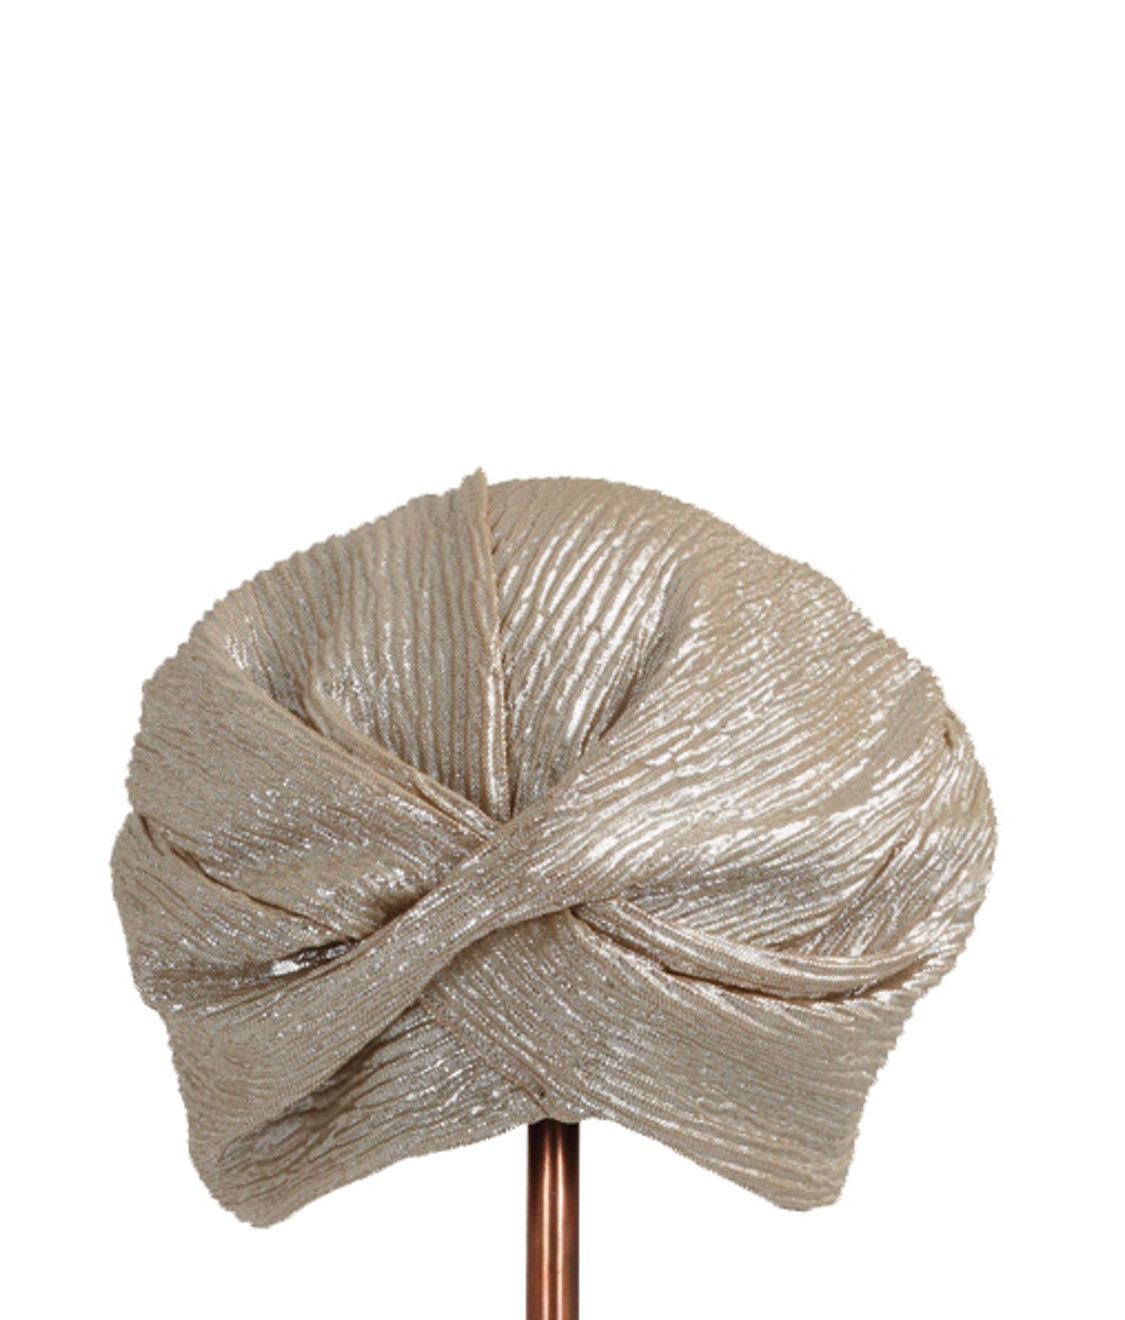 shop Flapper Saldi Accessori: Cappelli Flapper, modello Lola, turbante, dettagli dorati, tessuto plissé.

Composizione: 100% poliestere. number 1544